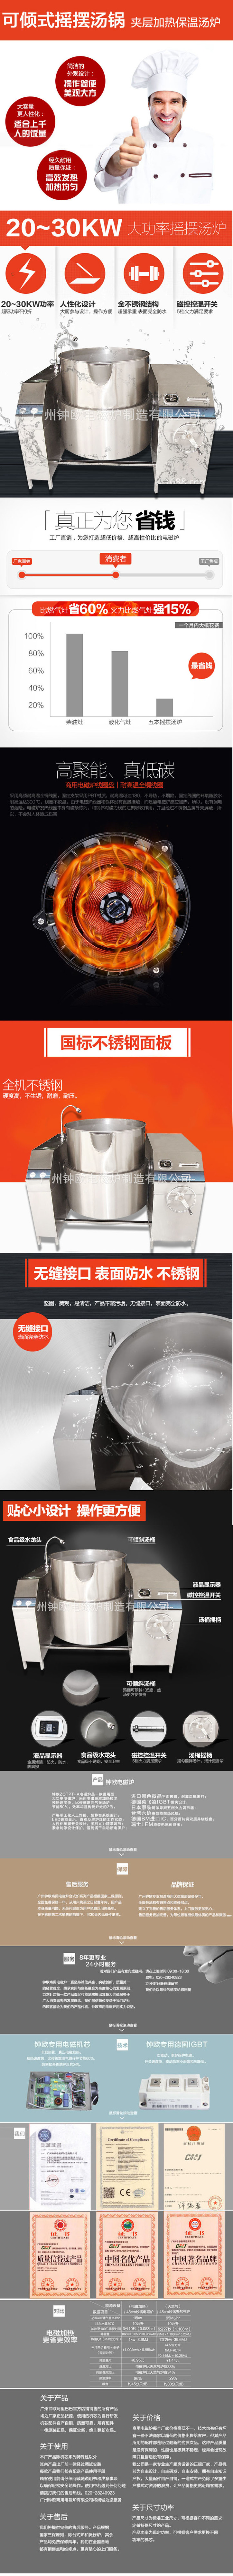 钟欧可倾式摇摆汤锅 大容量夹层加热汤炉 商用夹层电磁汤锅